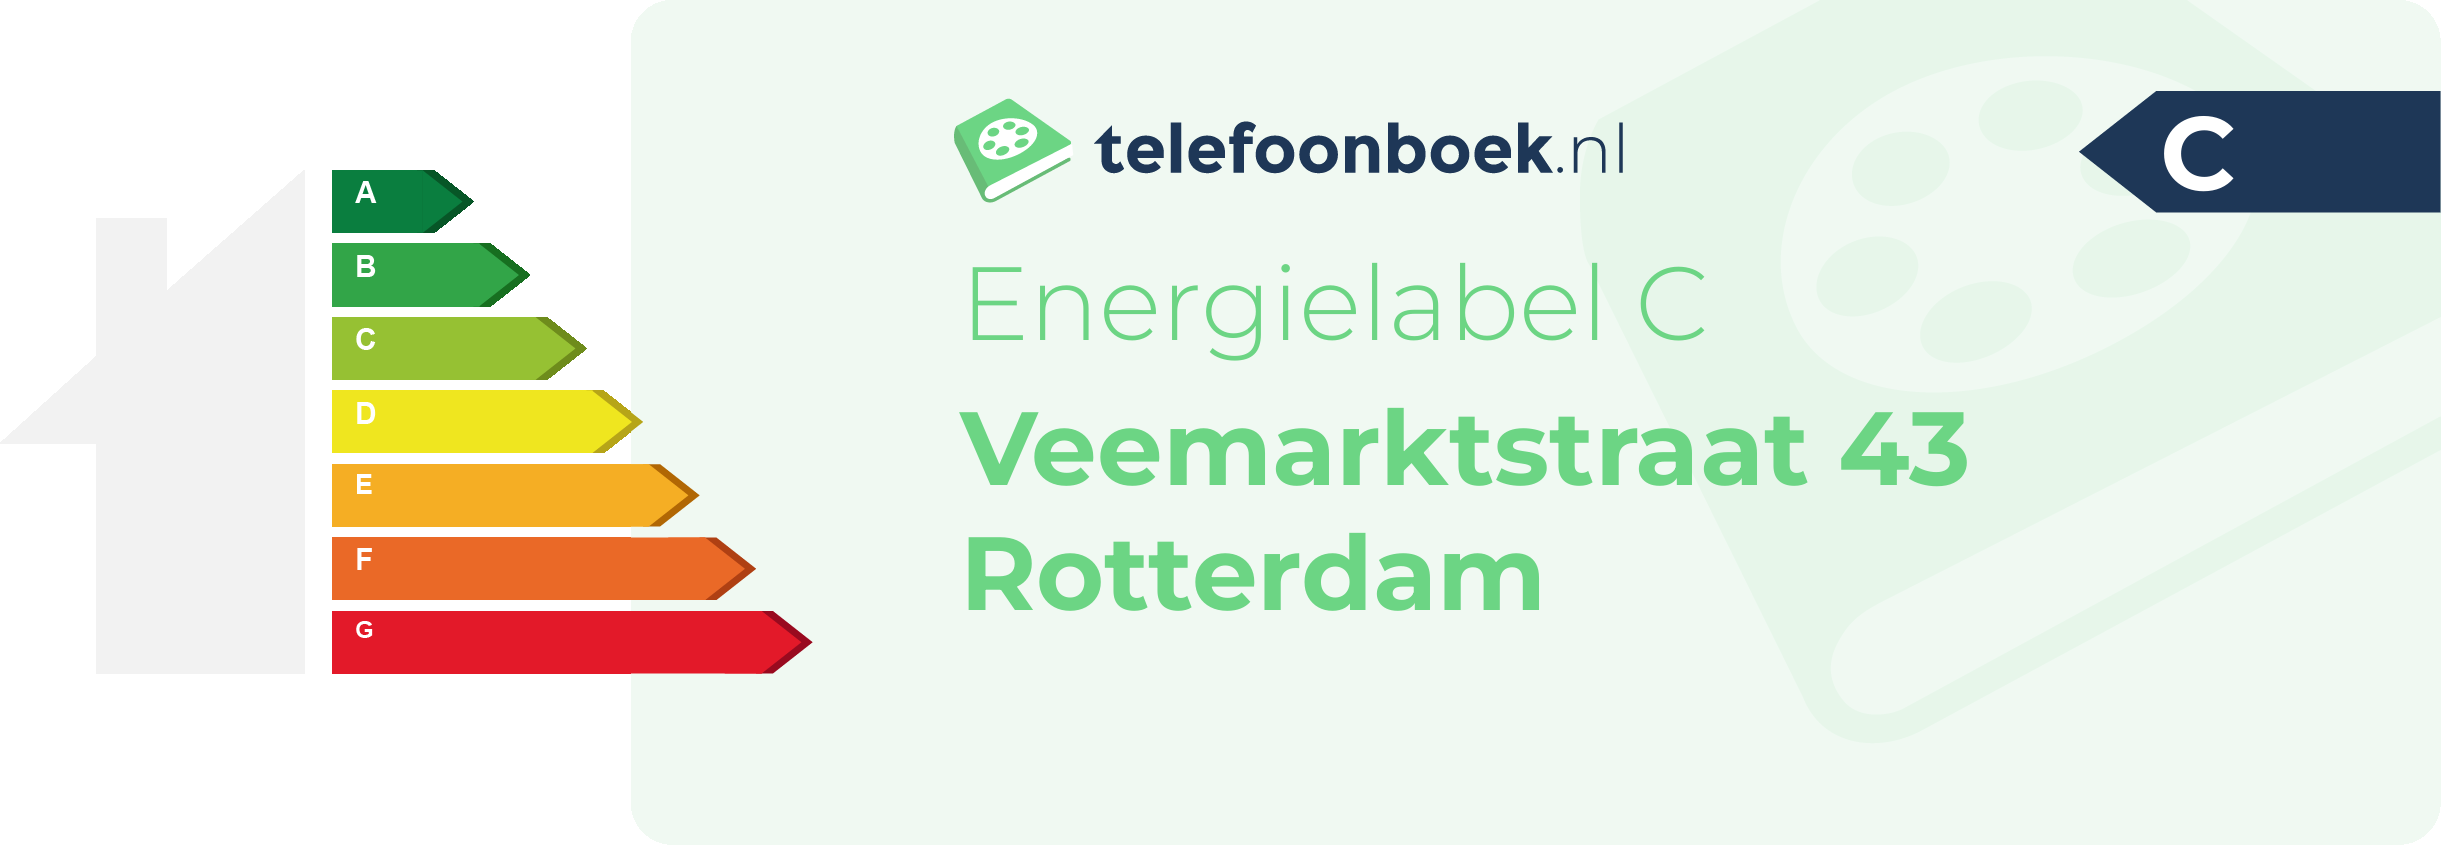 Energielabel Veemarktstraat 43 Rotterdam